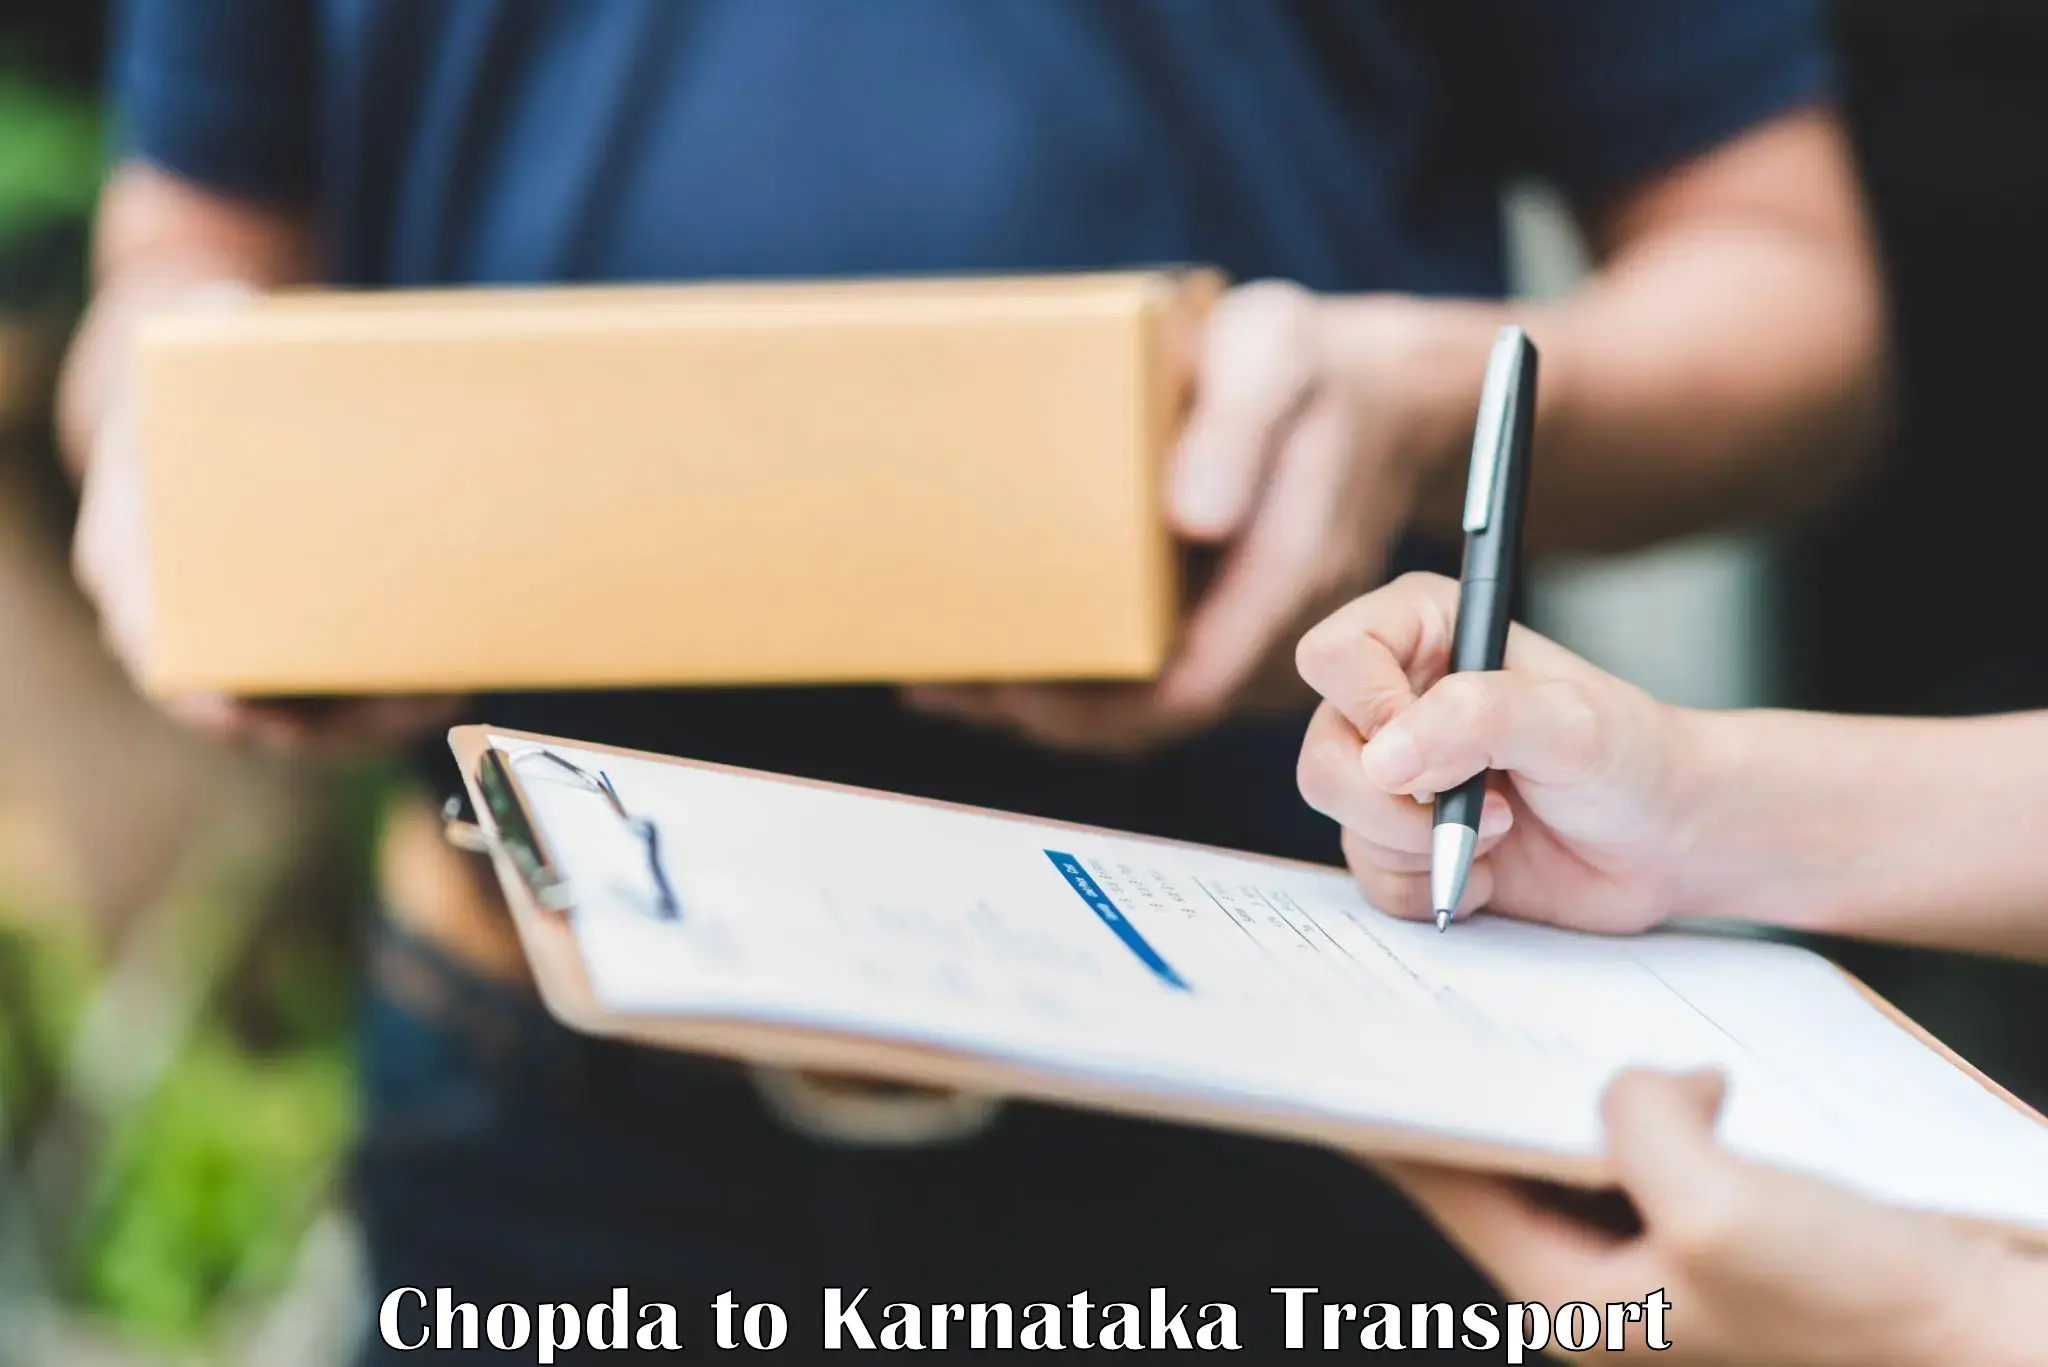 Online transport booking Chopda to Dharmasthala